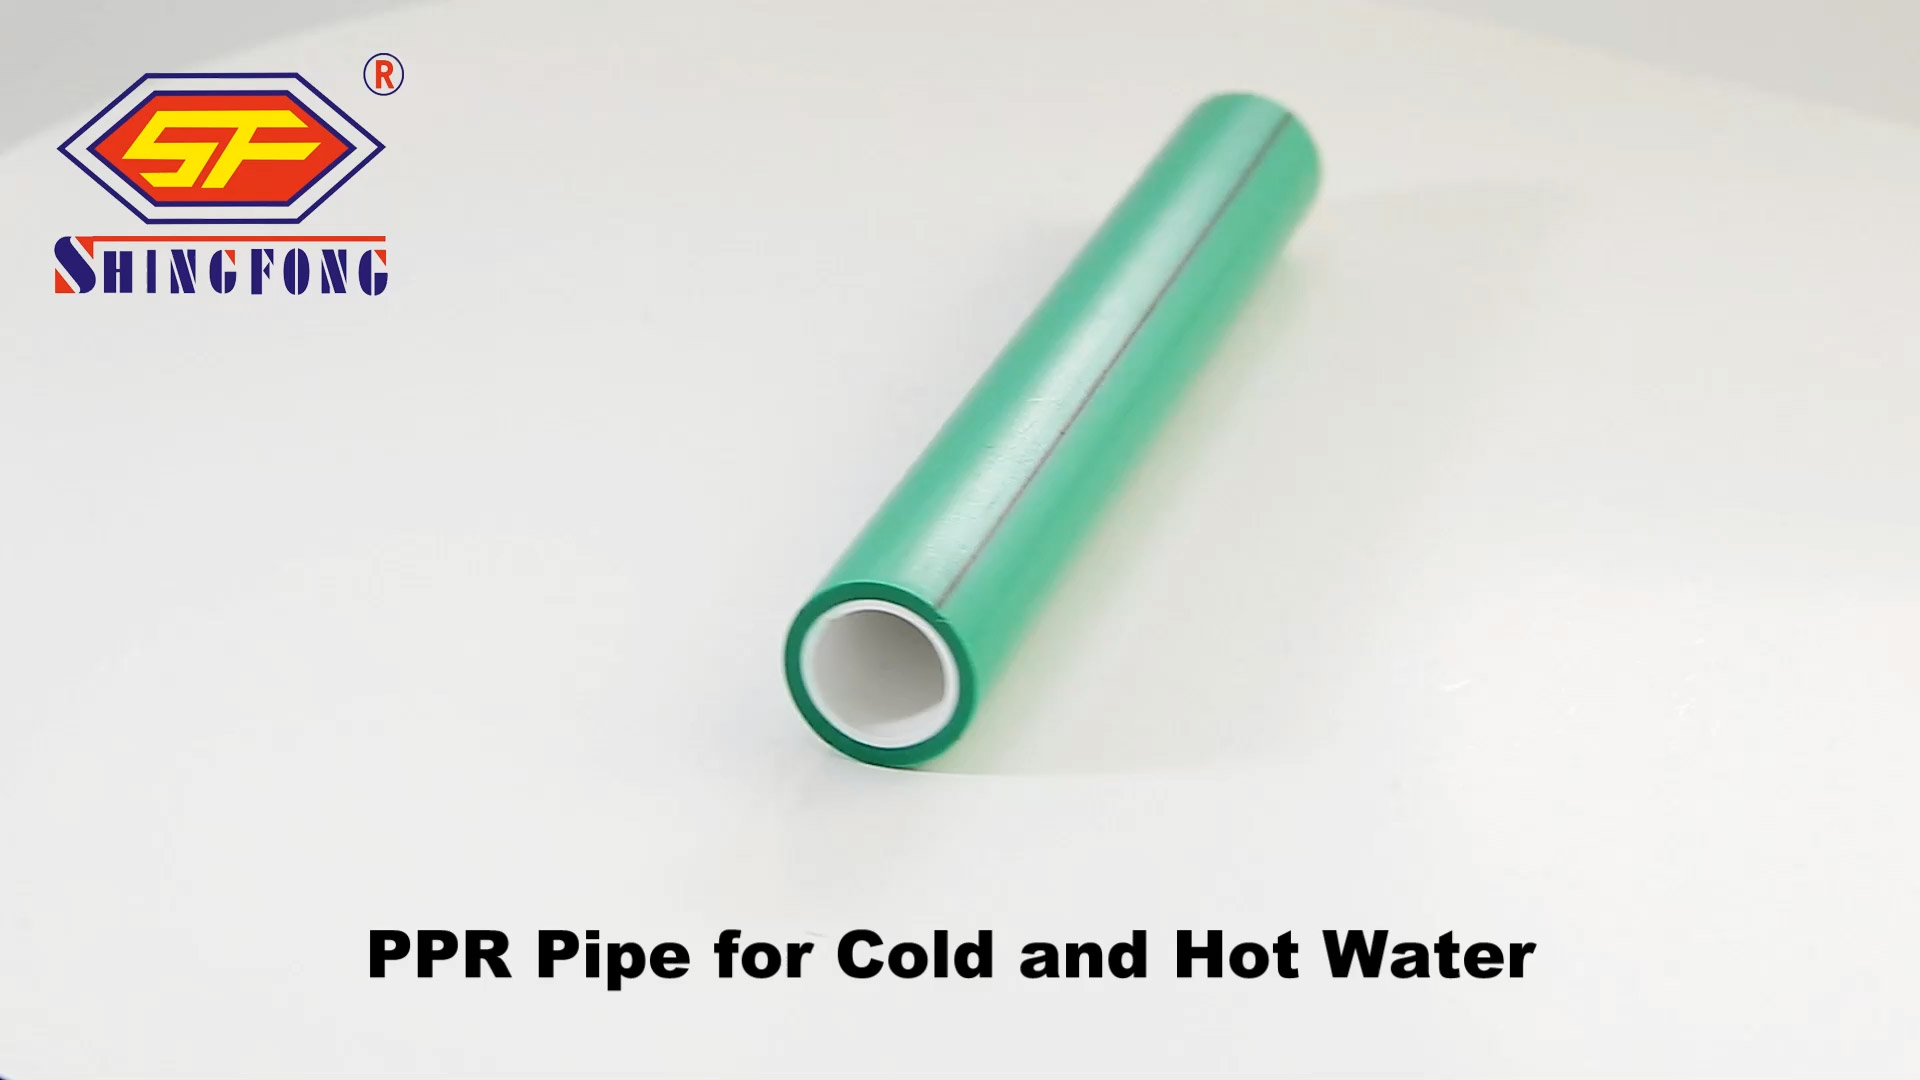 Beste PPR-pyp vir koue en warm water fabrieksprys | Shingfong